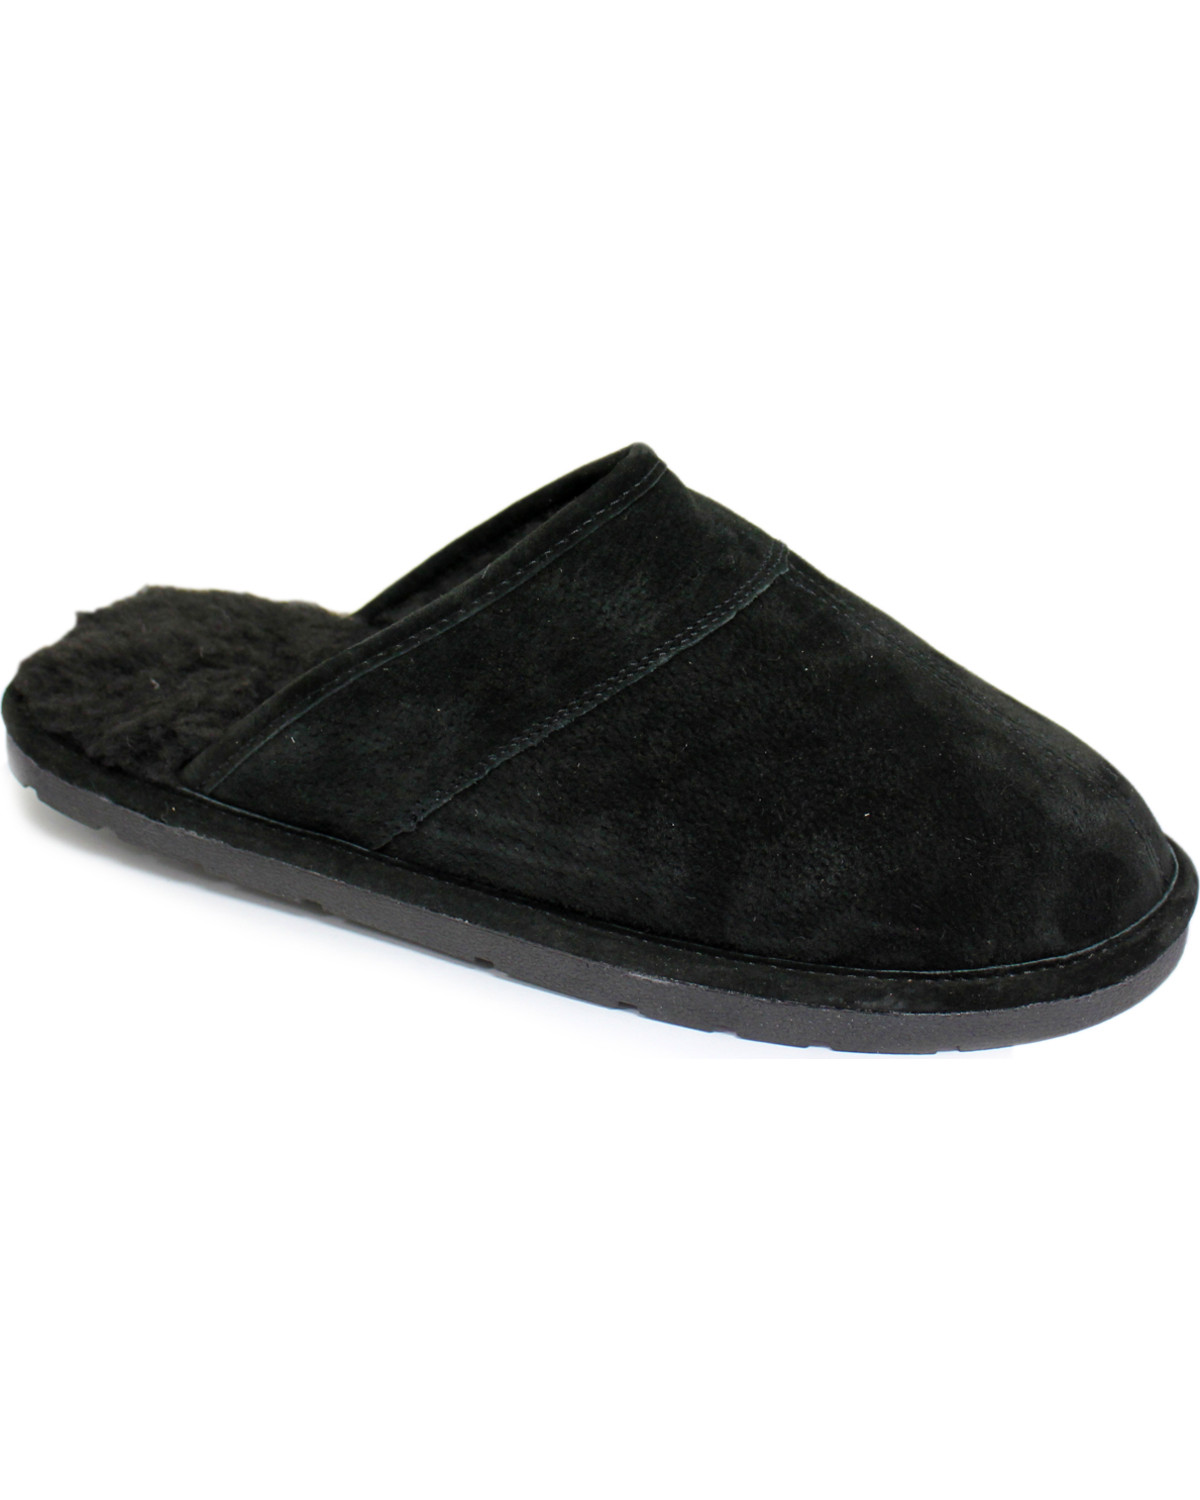 Lamo Footwear Men's Scuff Leather Slippers